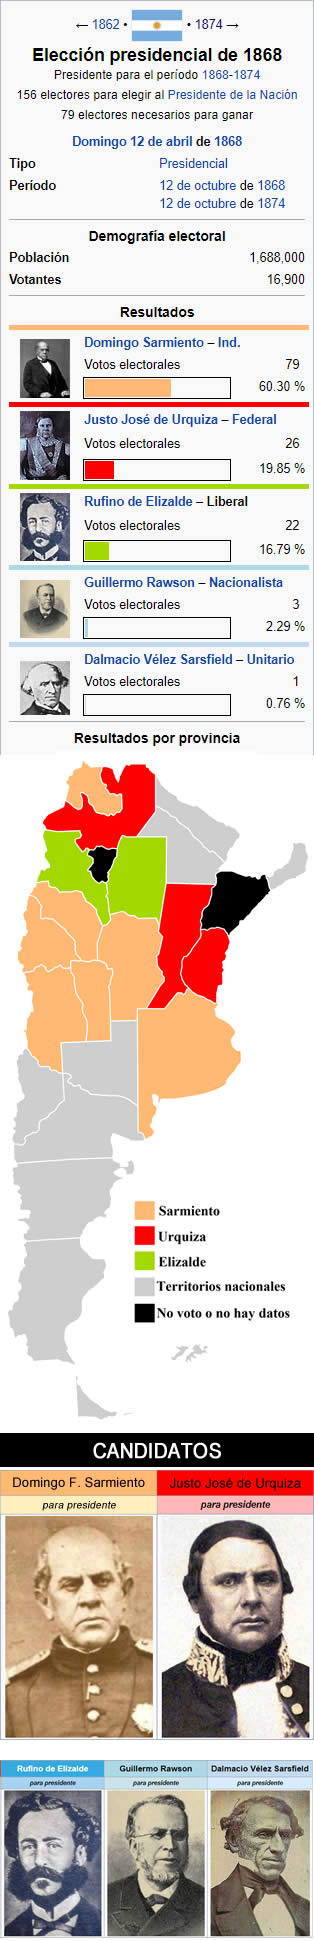 elecciones presidenciales argentina de 1868